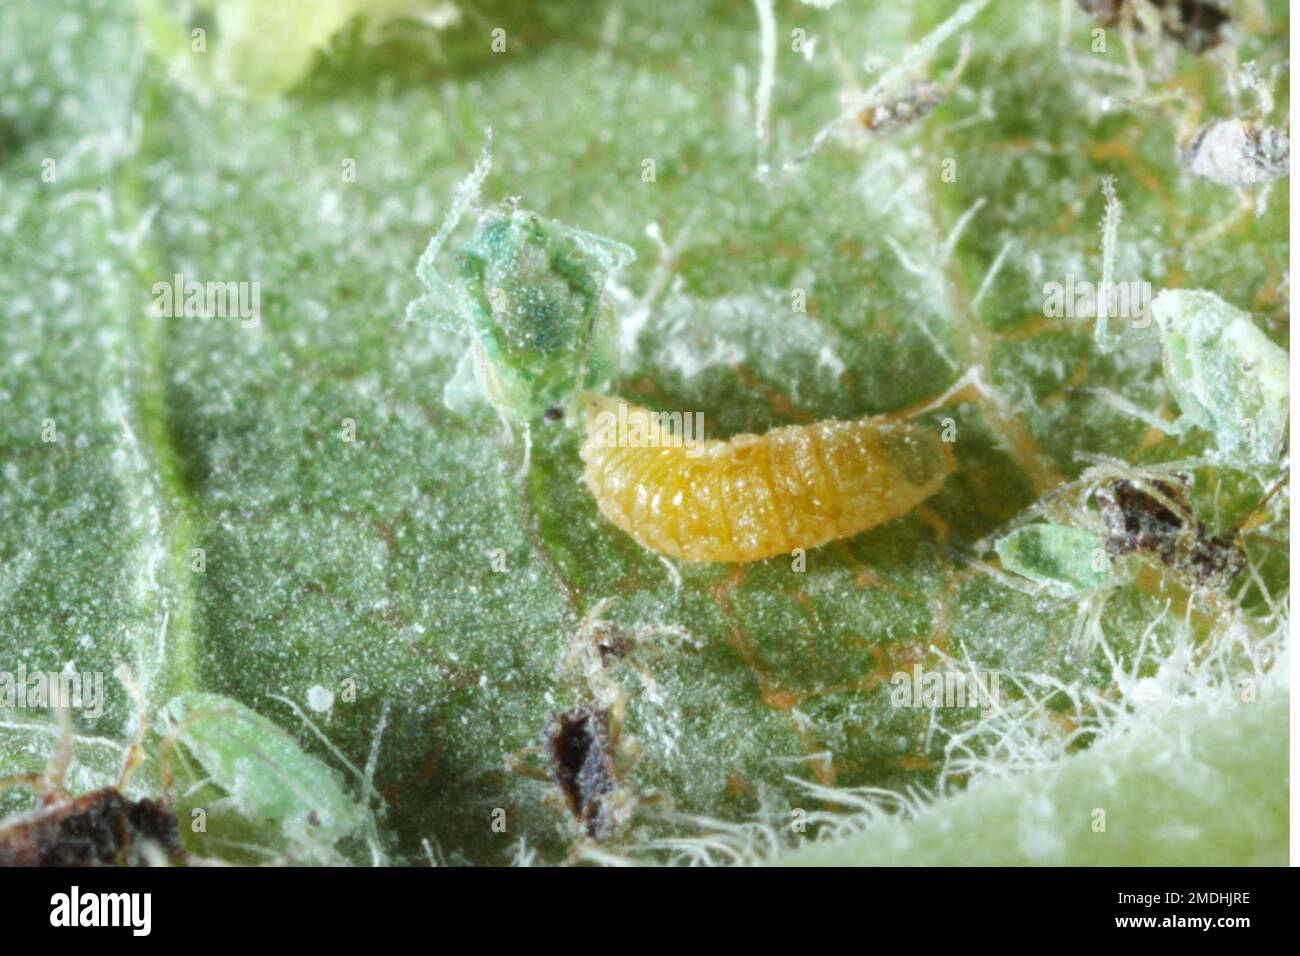 Larve d'un aphidoletes aphidimyza (communément appelé mige pucidique) se nourrissant du puceron méaly Plum (Hyalopterus pruni) Banque D'Images